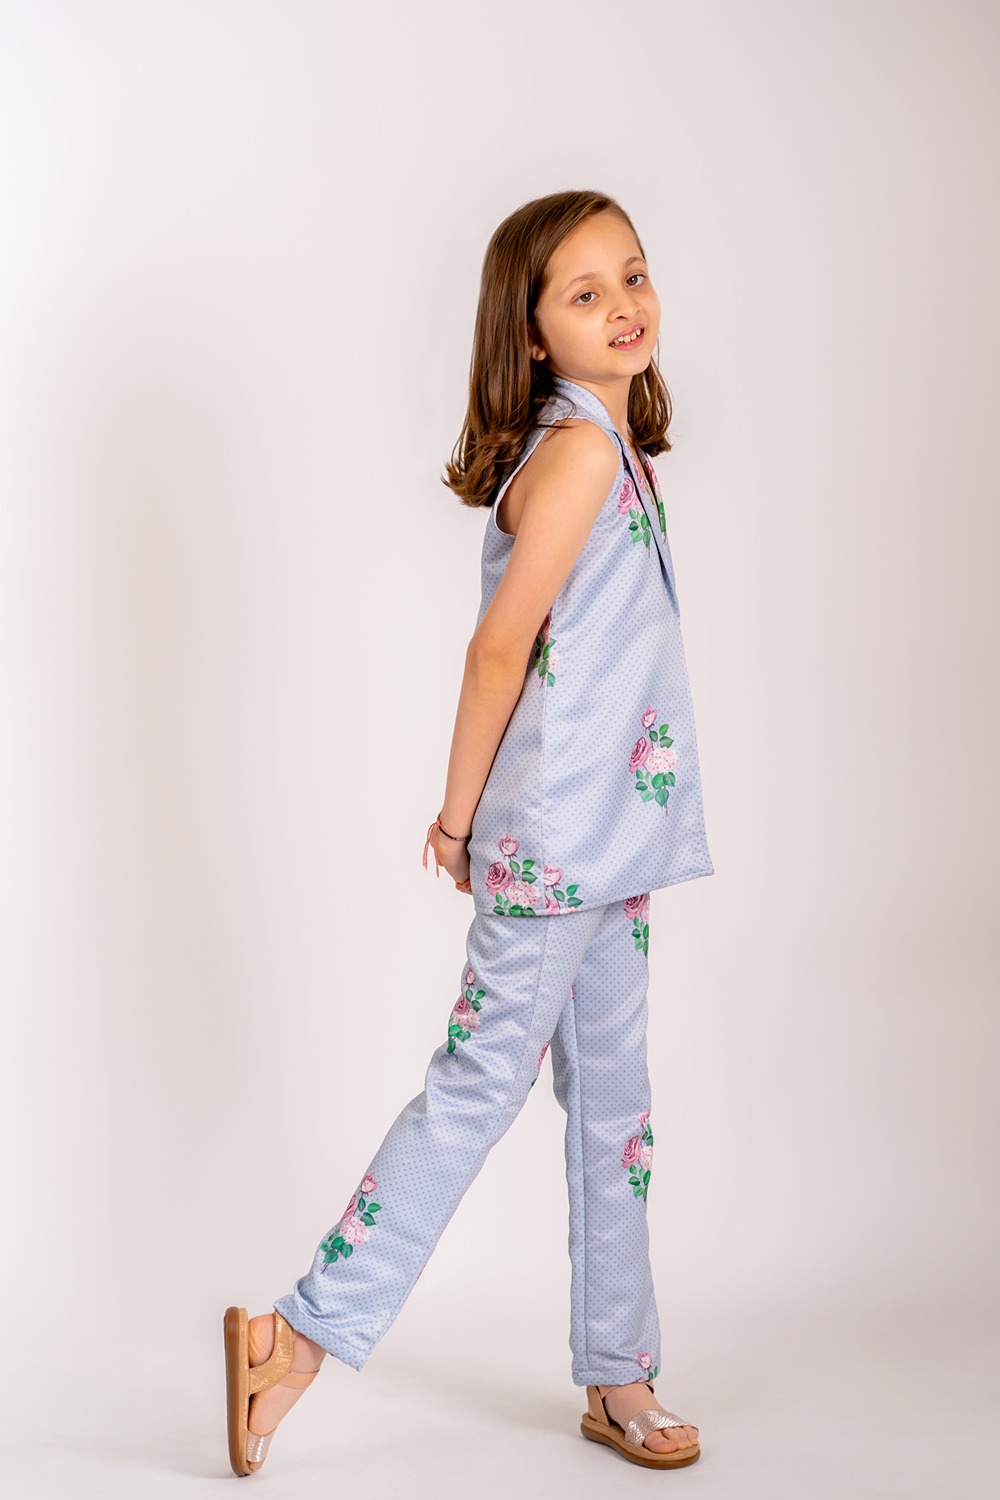 Soft Blue Floral & Polka Dot Pantsuit Kids